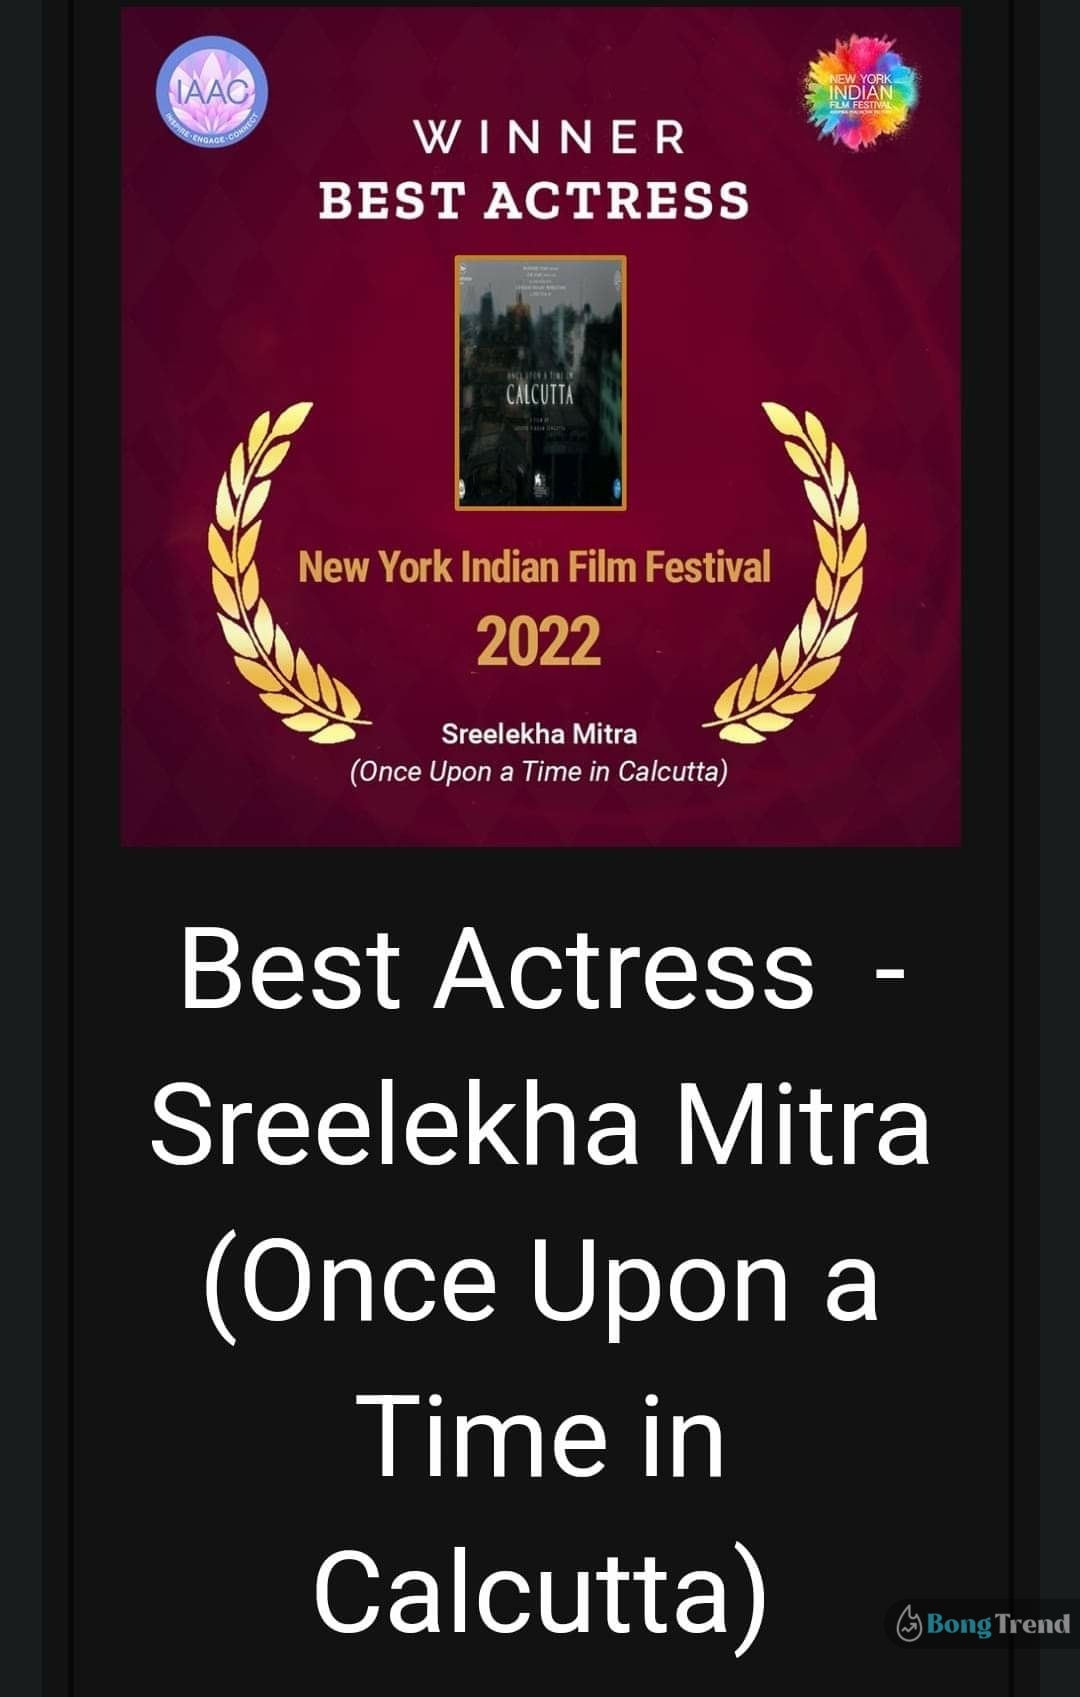 শ্রীলেখা মিত্র,Sreelekha Mitra,অনন্যা চট্টোপাধ্যায়,Ananya Chatterjee,নিউ ইয়র্ক ইন্ডিয়ান ফিল্ম ফেস্টিভ্যাল,New York Indian Film Festival,সেরা অভিনেত্রী,Best Actress